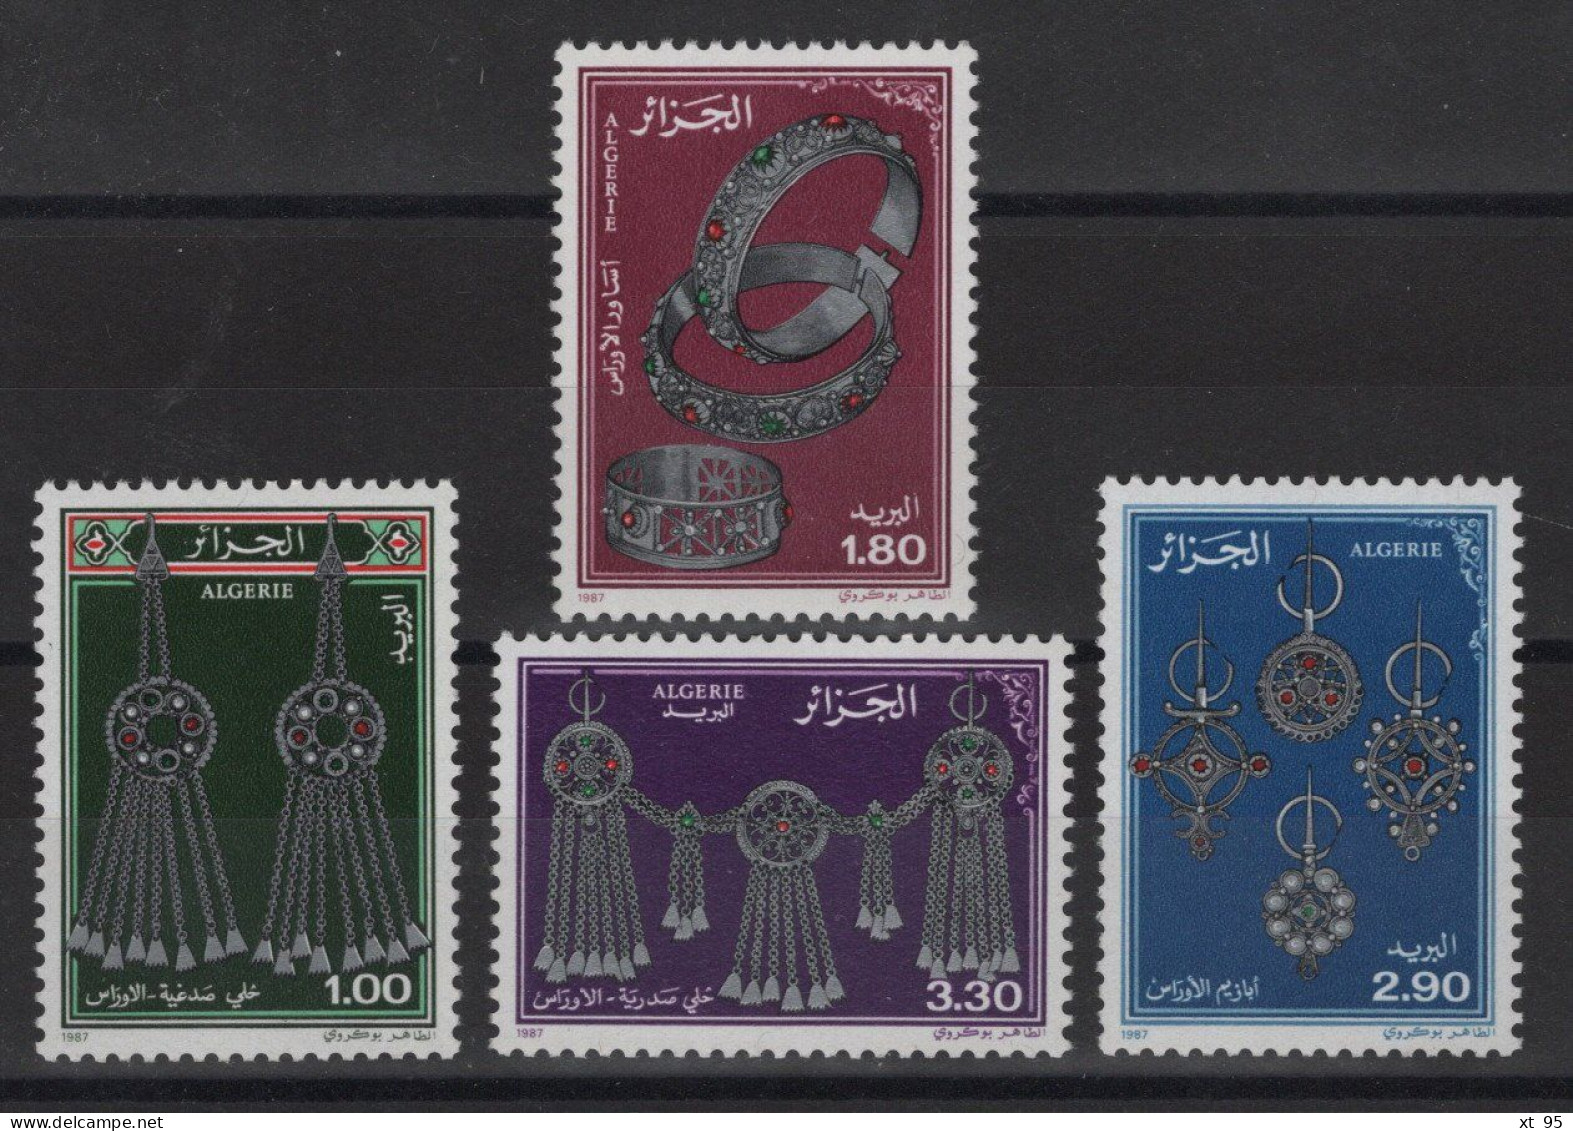 Algerie - N°888 à 891 - Bijoux - Cote 6.75€ - ** Neuf Sans Charniere - Algeria (1962-...)